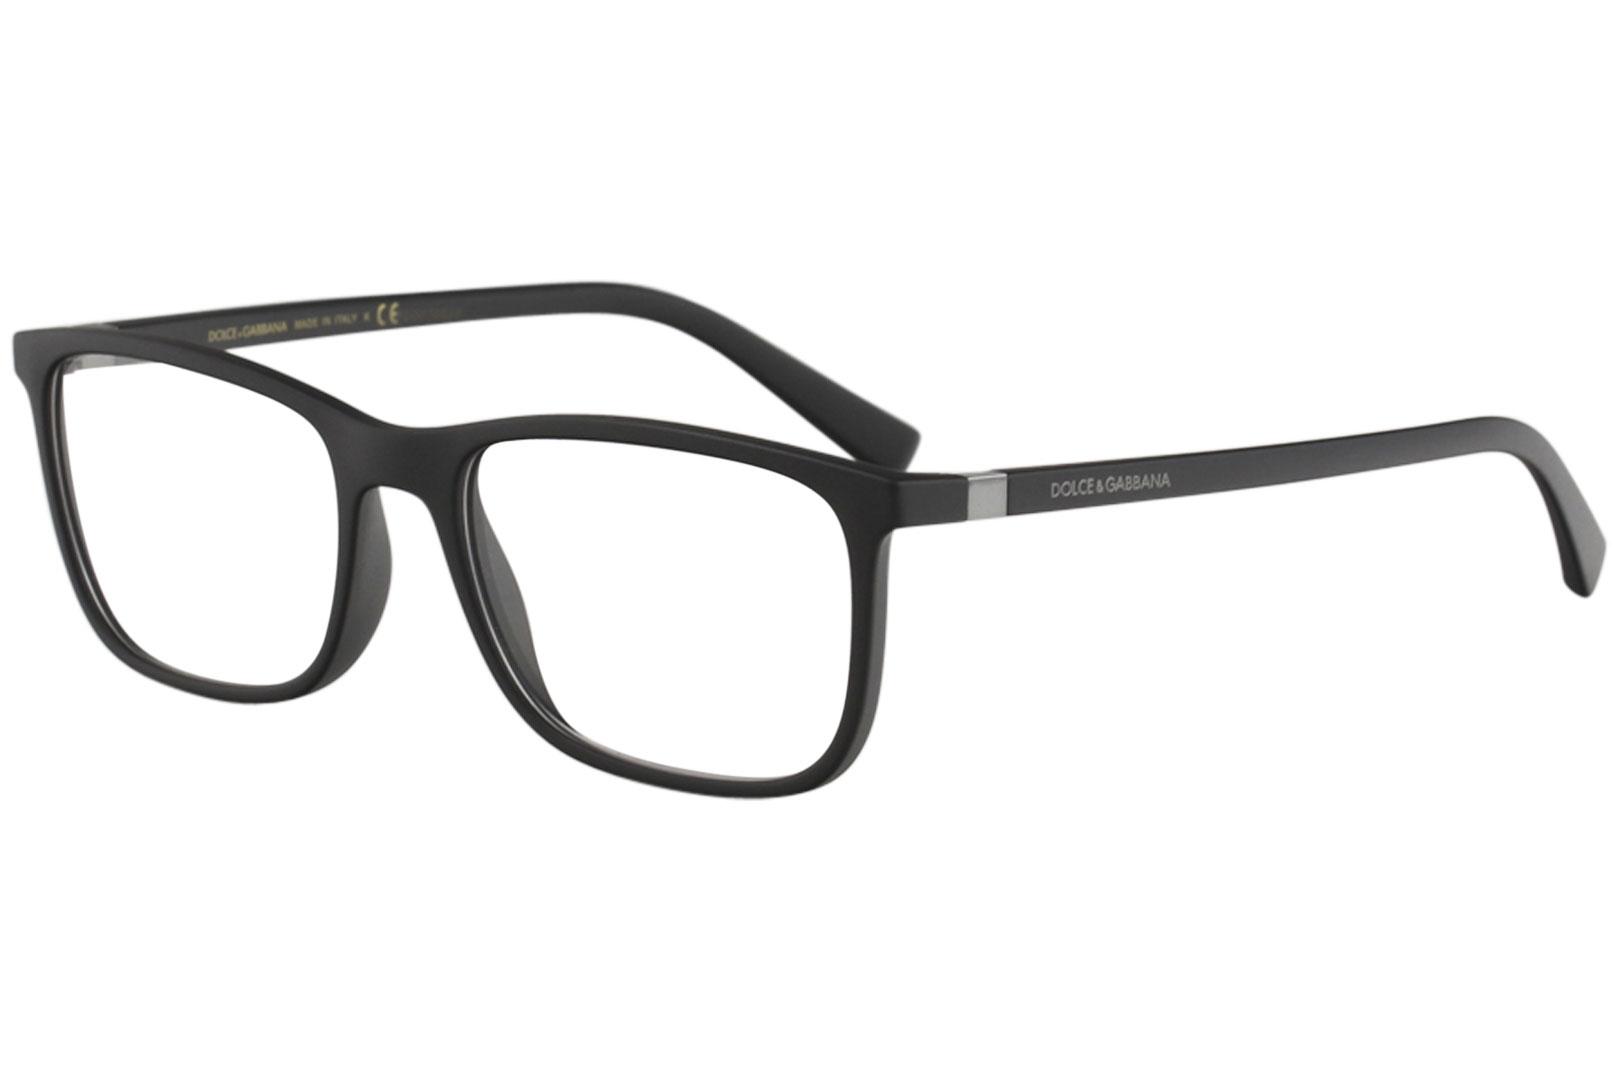 Dolce & Gabbana Men's Eyeglasses D&G DG5027 DG/5027 Full Rim Optical Frame - Matte Black   2525 - Lens 55 Bridge 18 B 39.8 ED 59.1 Temple 140mm